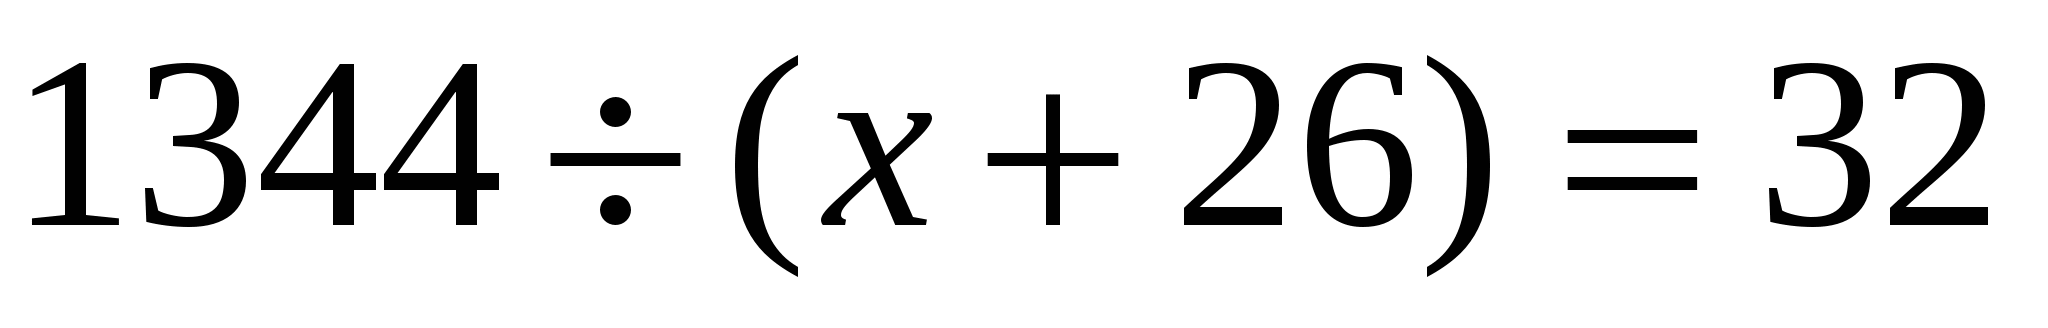 Конспект урока по математике на тему: Уравнение. Корень уравнения (5 класс)